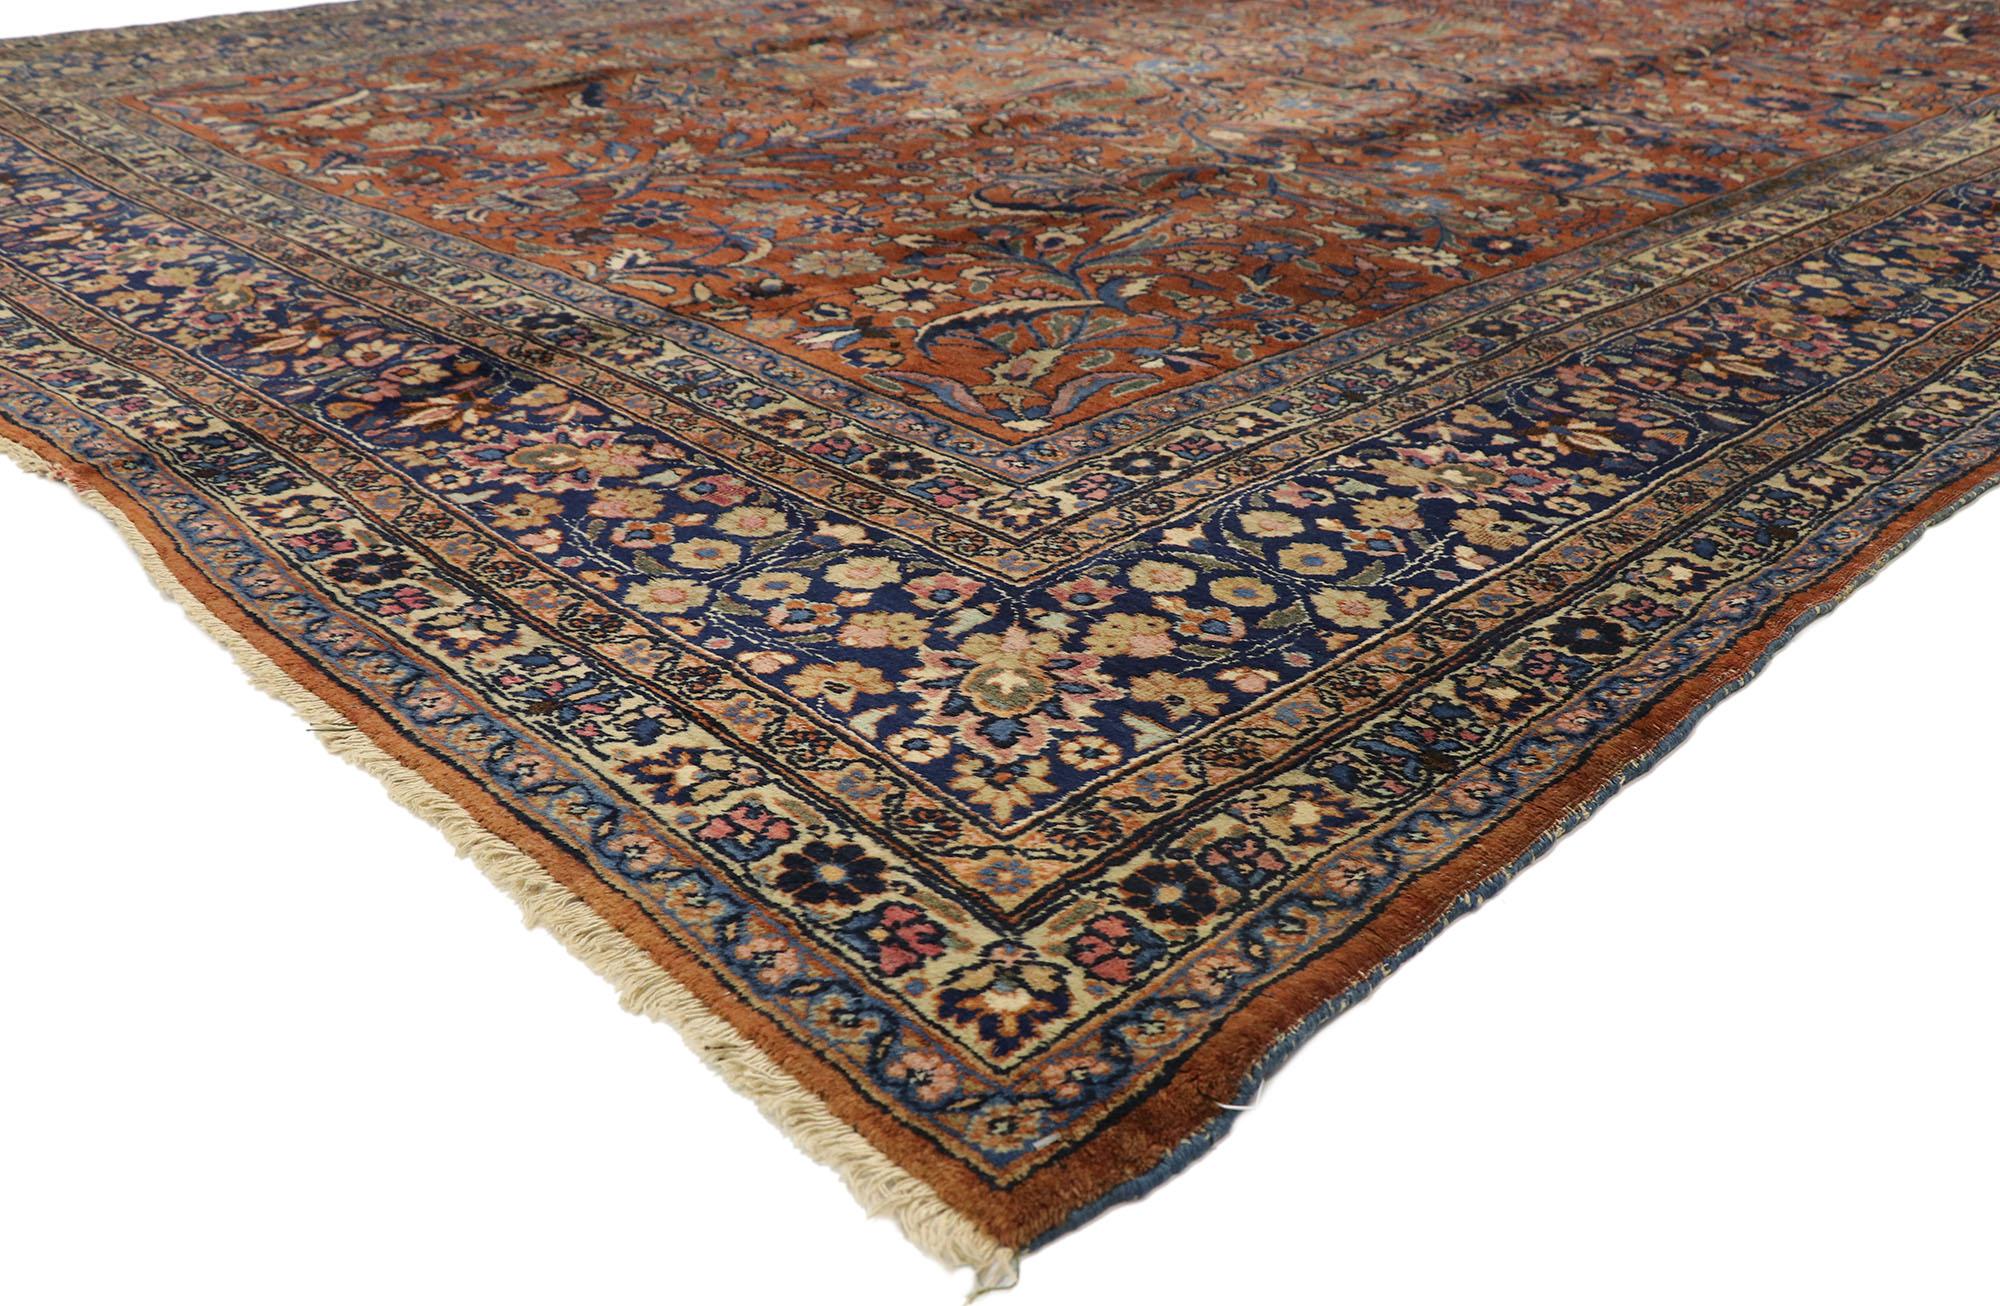 71212, antiker persischer Mashhad-Teppich im traditionellen Stil. Dieser handgeknüpfte antike persische Mashhad-Teppich aus Wolle im traditionellen Stil zeigt ein Allover-Muster auf einem warmen braunen Feld, das von einer klassischen marineblauen